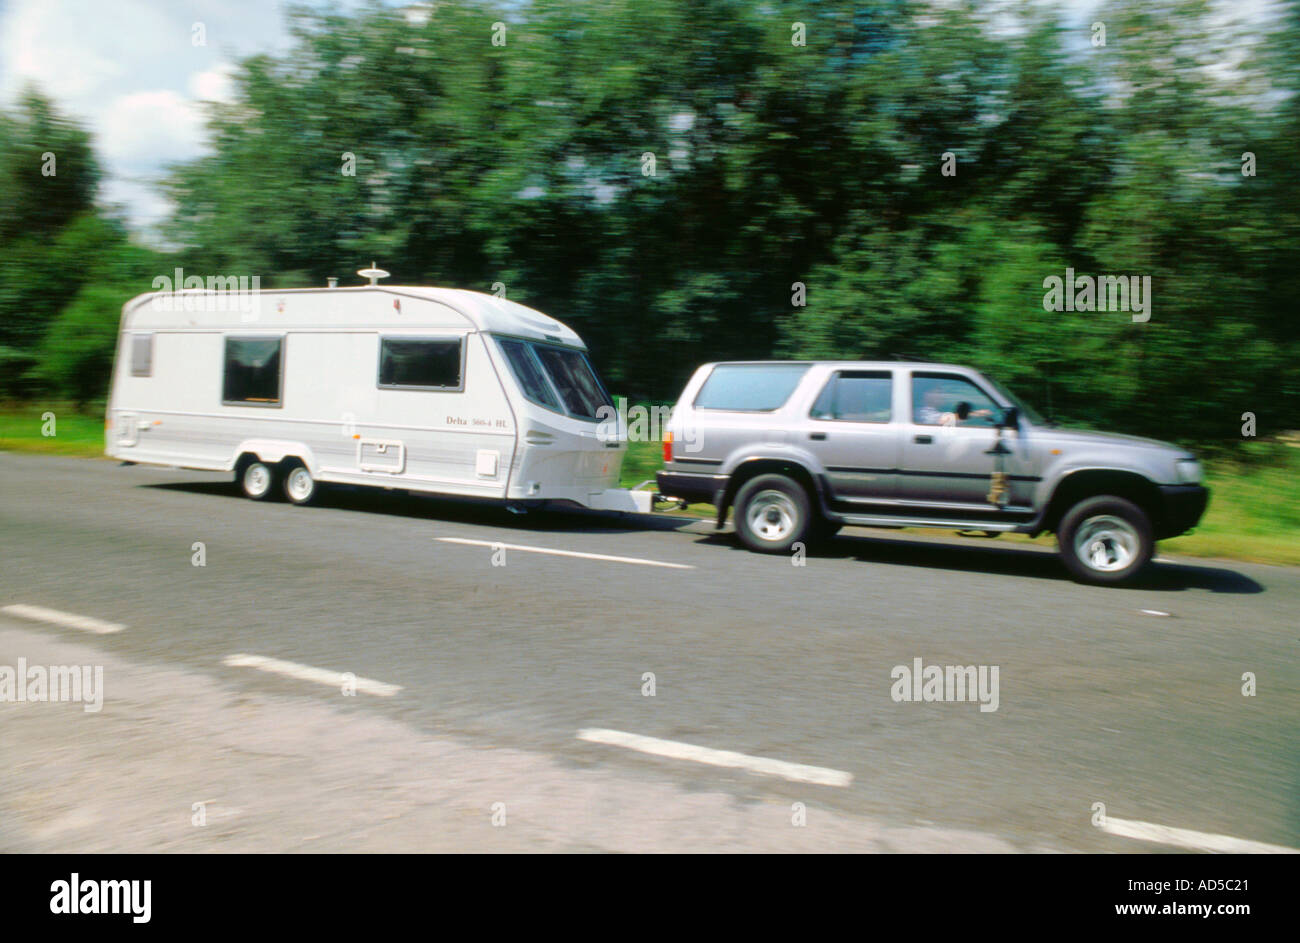 1995 Toyota Landcruiser towing large caravan at speed Stock Photo